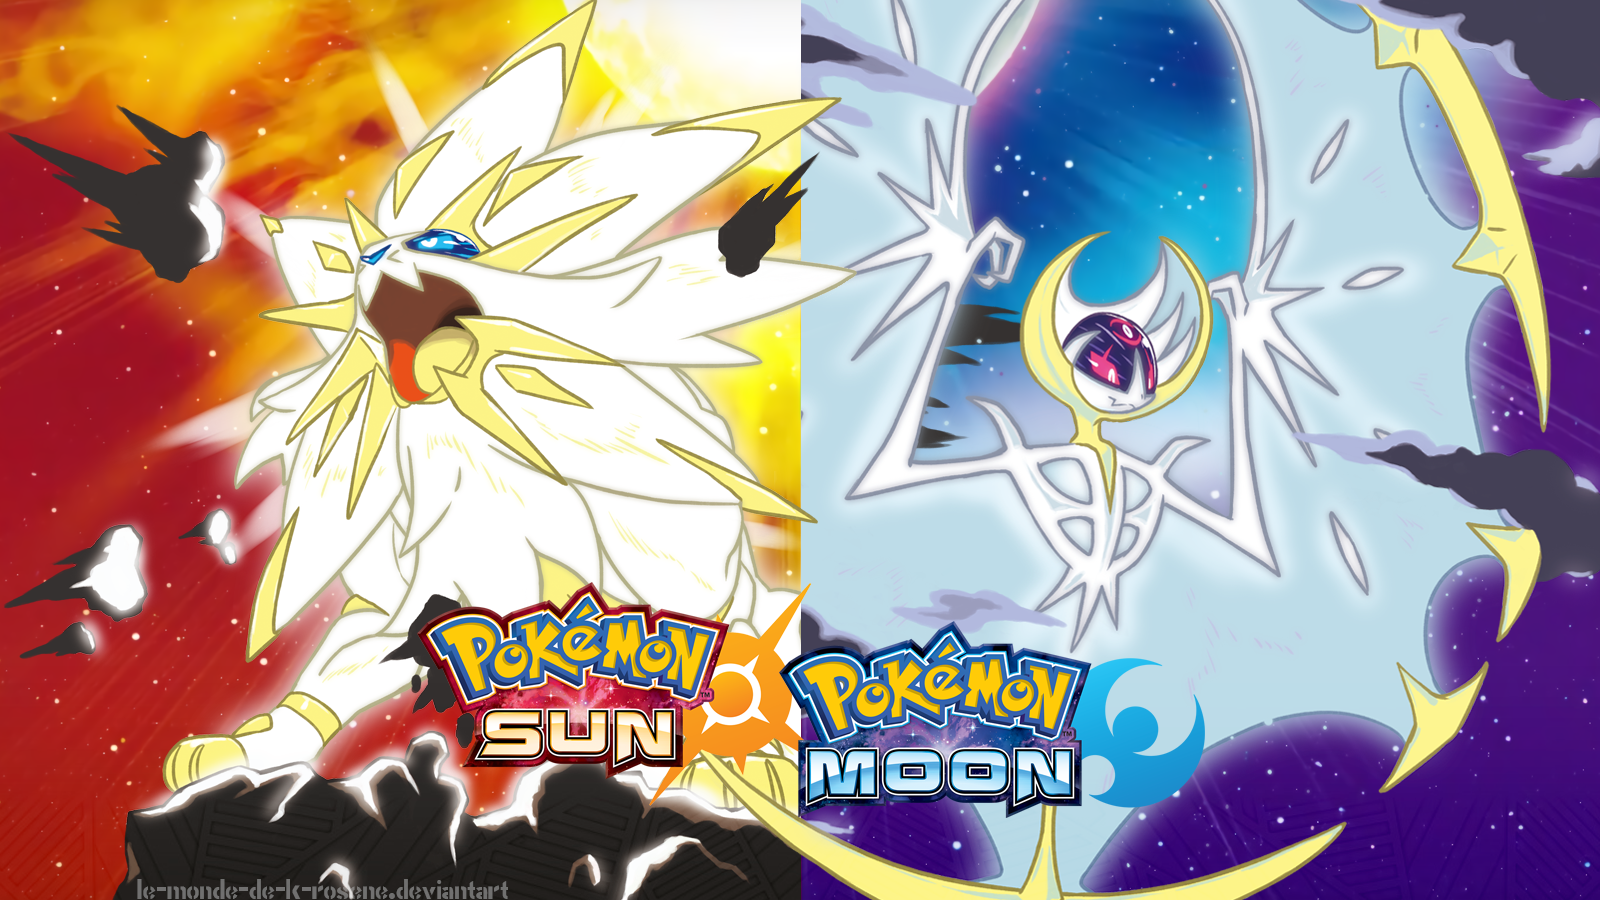 Lunala Pokemon Pokemon Pokemon Moon Pokemon Sun Pokemon Sun And Moon Solgaleo Pokemon 1600x900